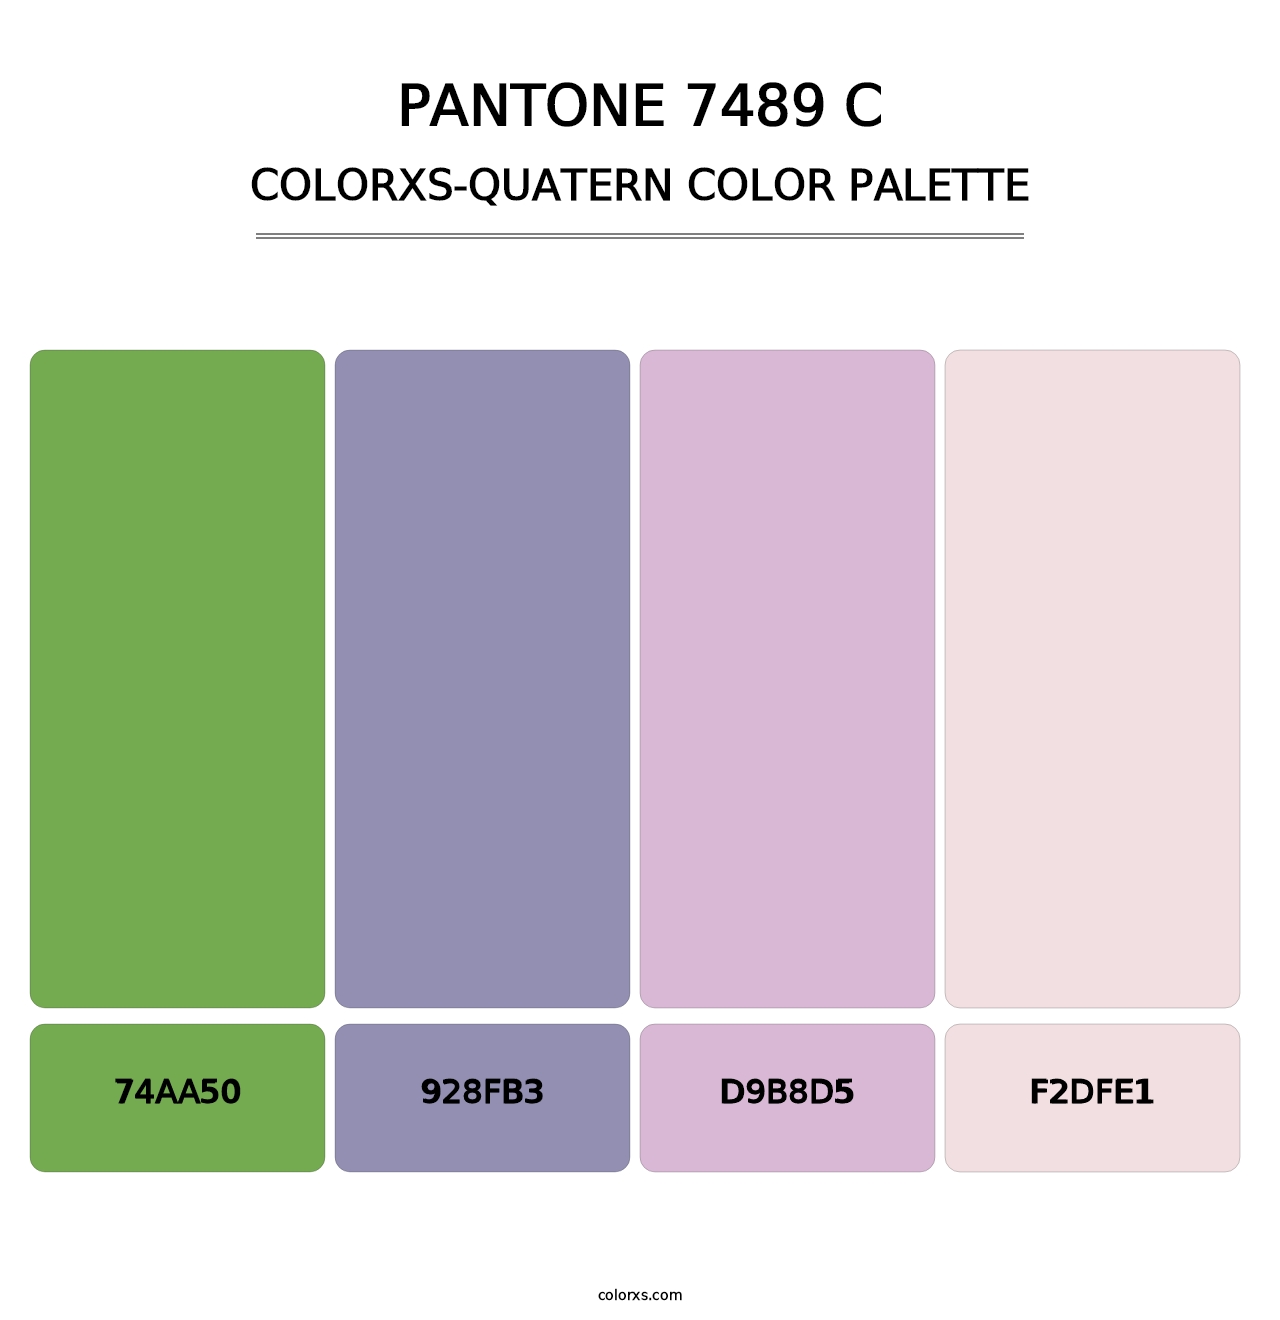 PANTONE 7489 C - Colorxs Quatern Palette